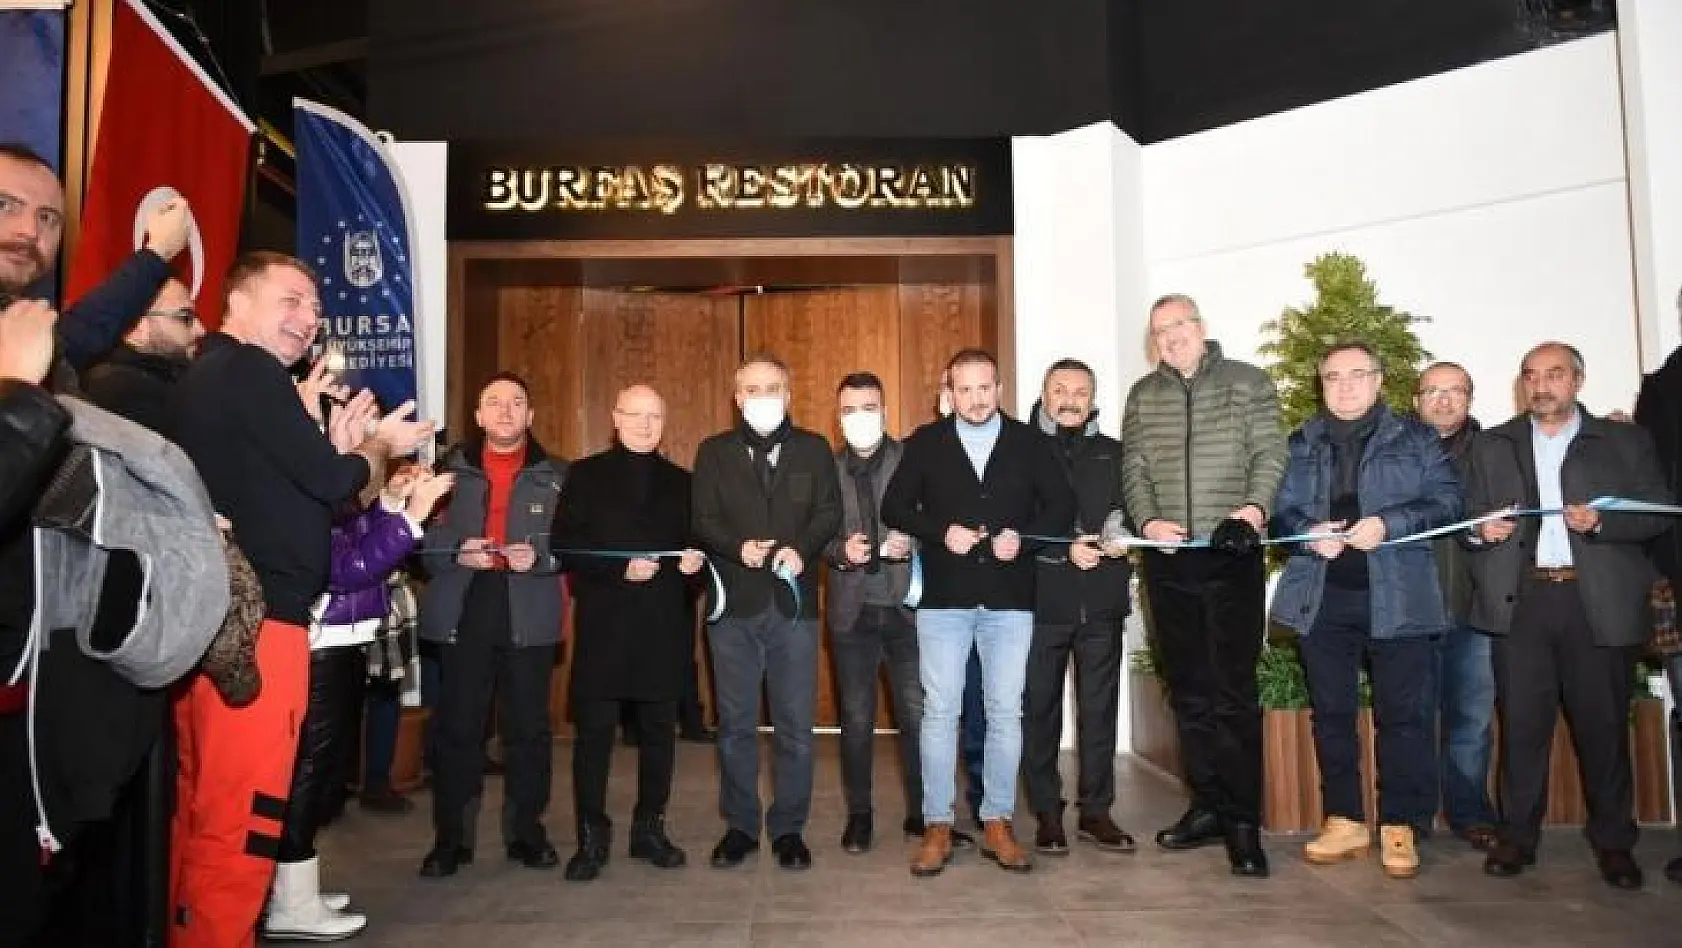 Bursa Büyükşehir Belediyesi'nin Uludağ'daki tesisi açıldı